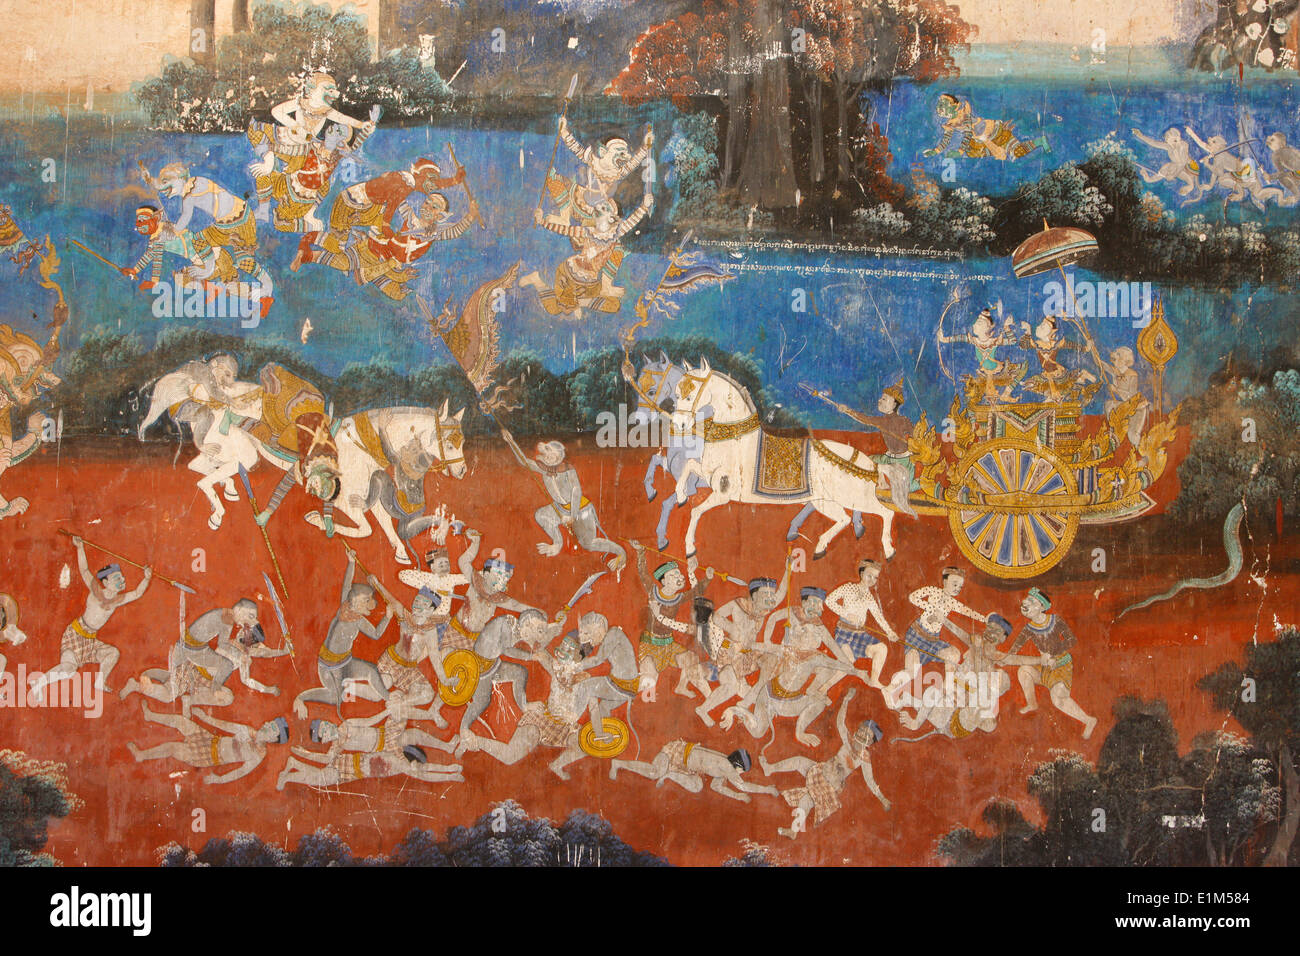 Sylver-Pagode. Dieses Wandbild zeigt Szenen aus das Reamker, die kambodschanischen oder Khmer Version des klassischen hinduistischen Gedichts Ra Stockfoto